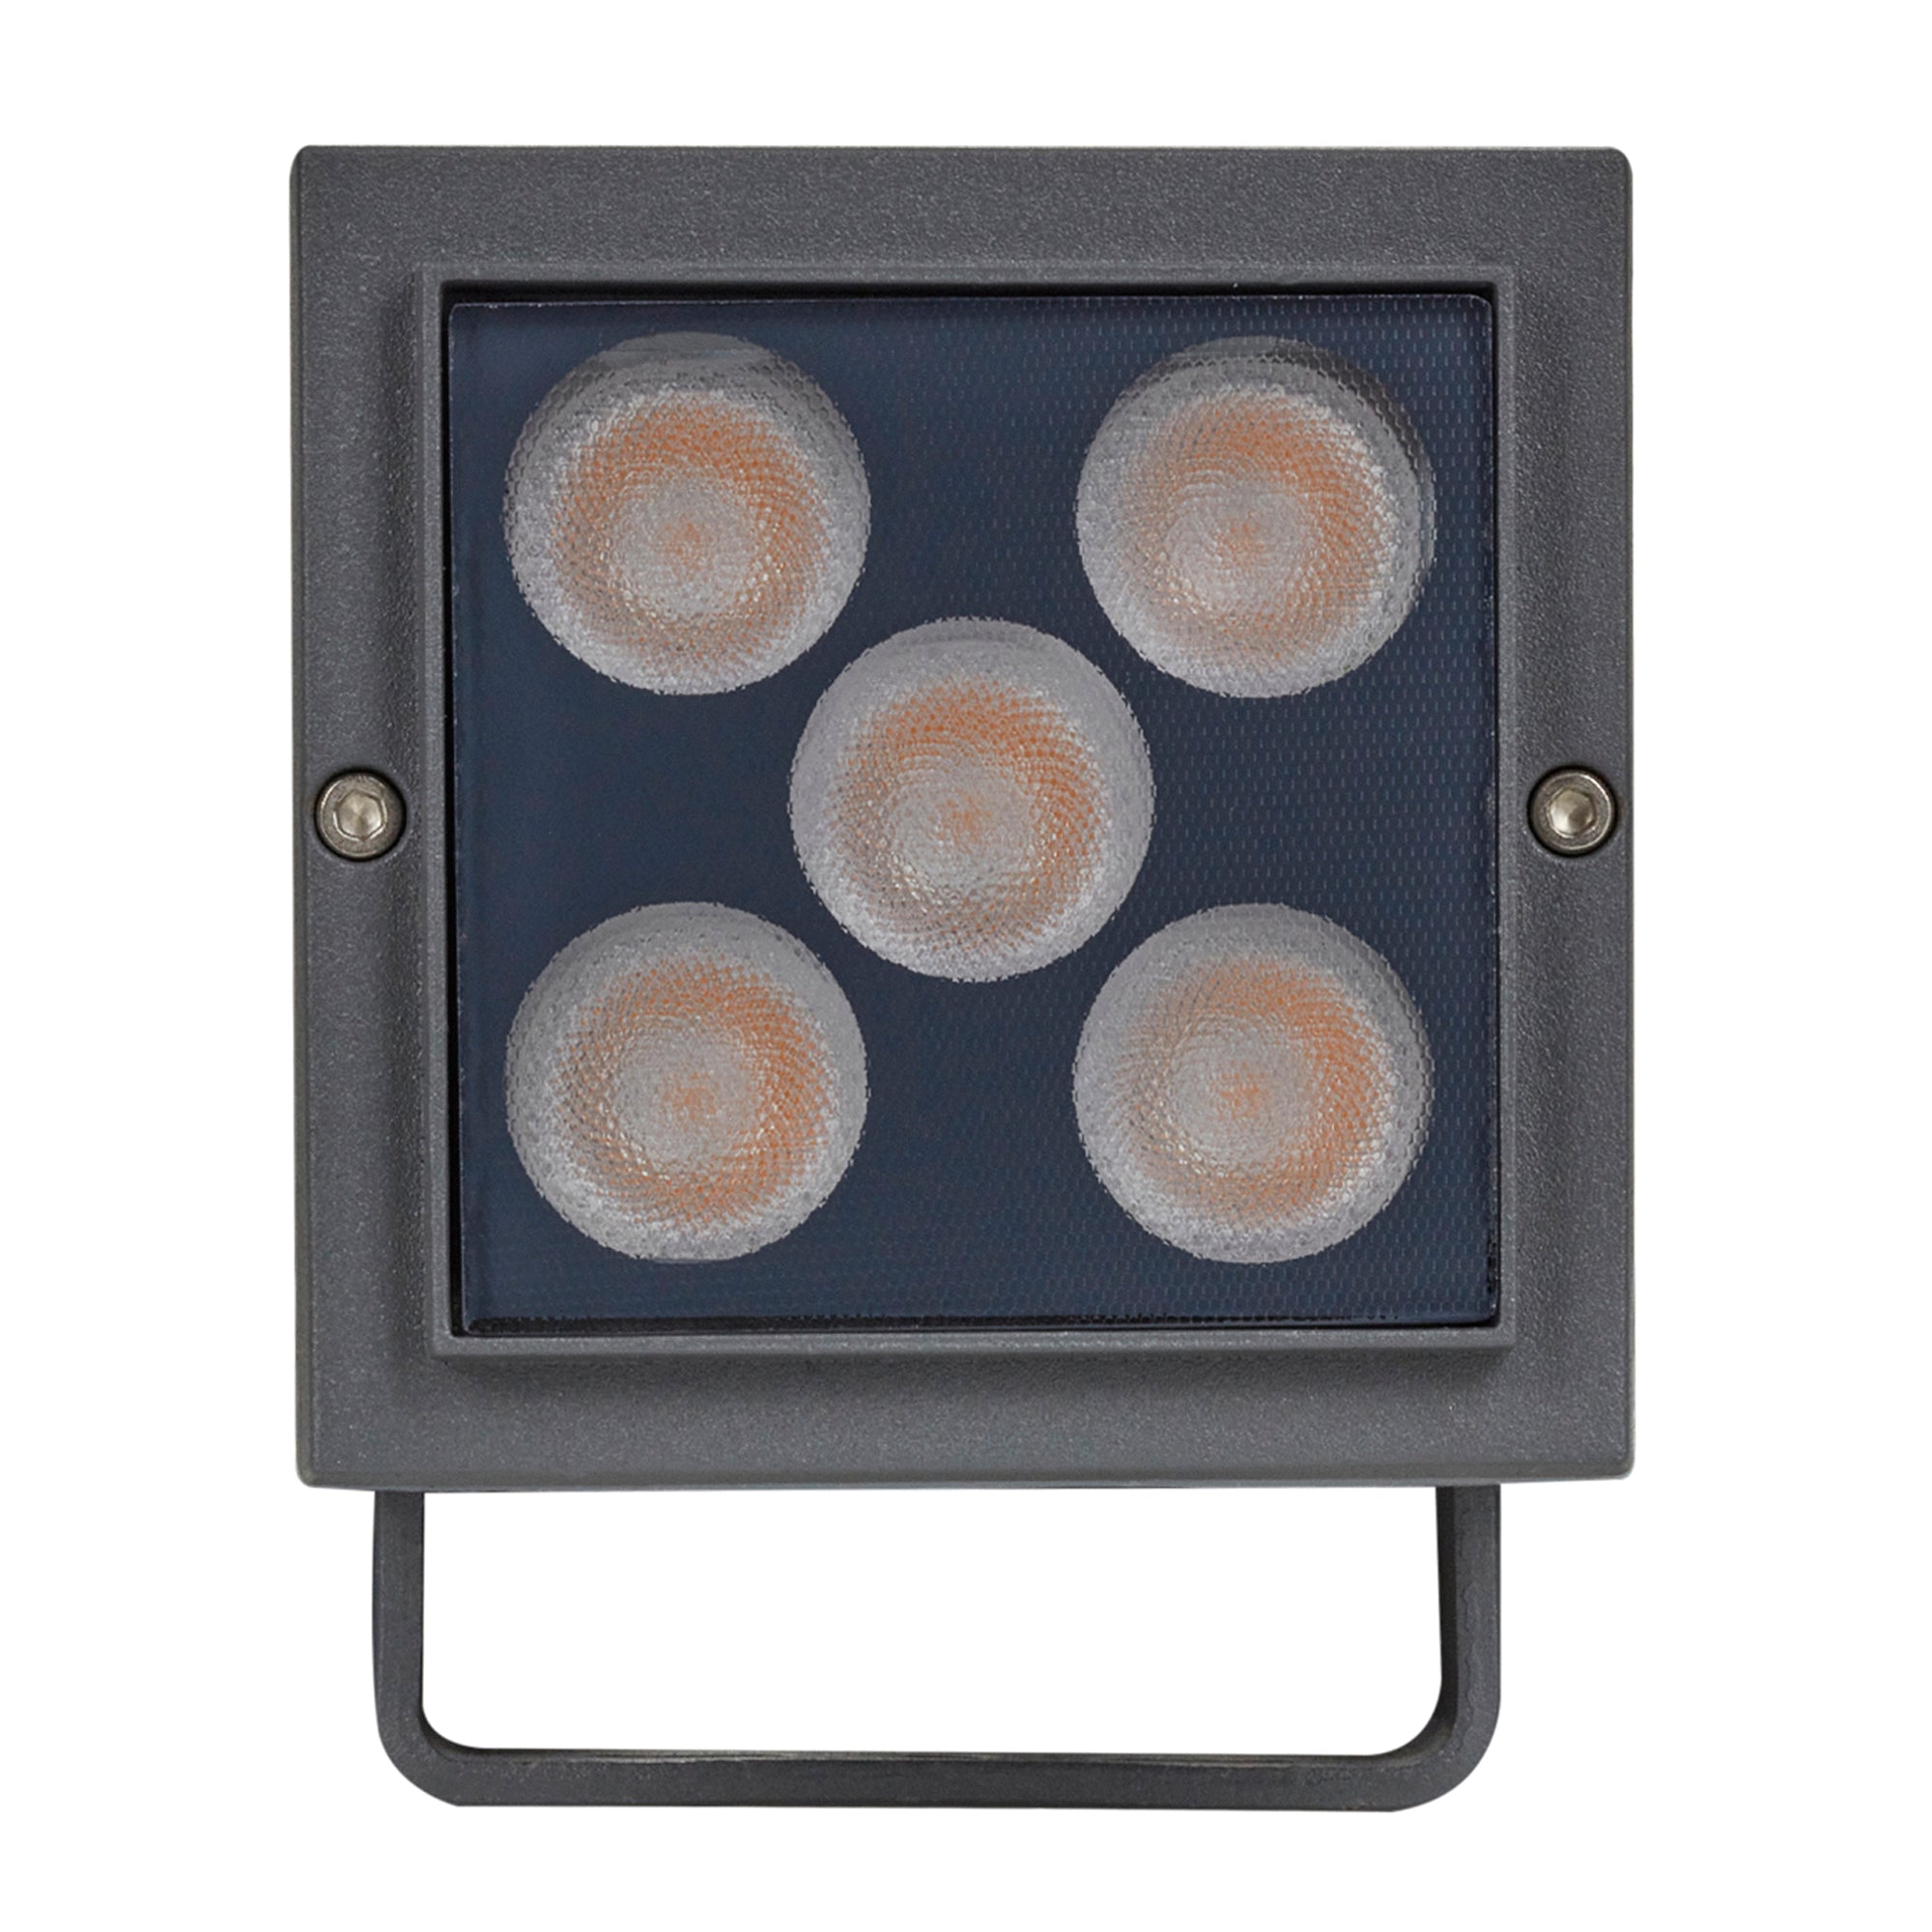 Luminaria LED REFLECTOR para Piso Modelo PL-7704 The Collection